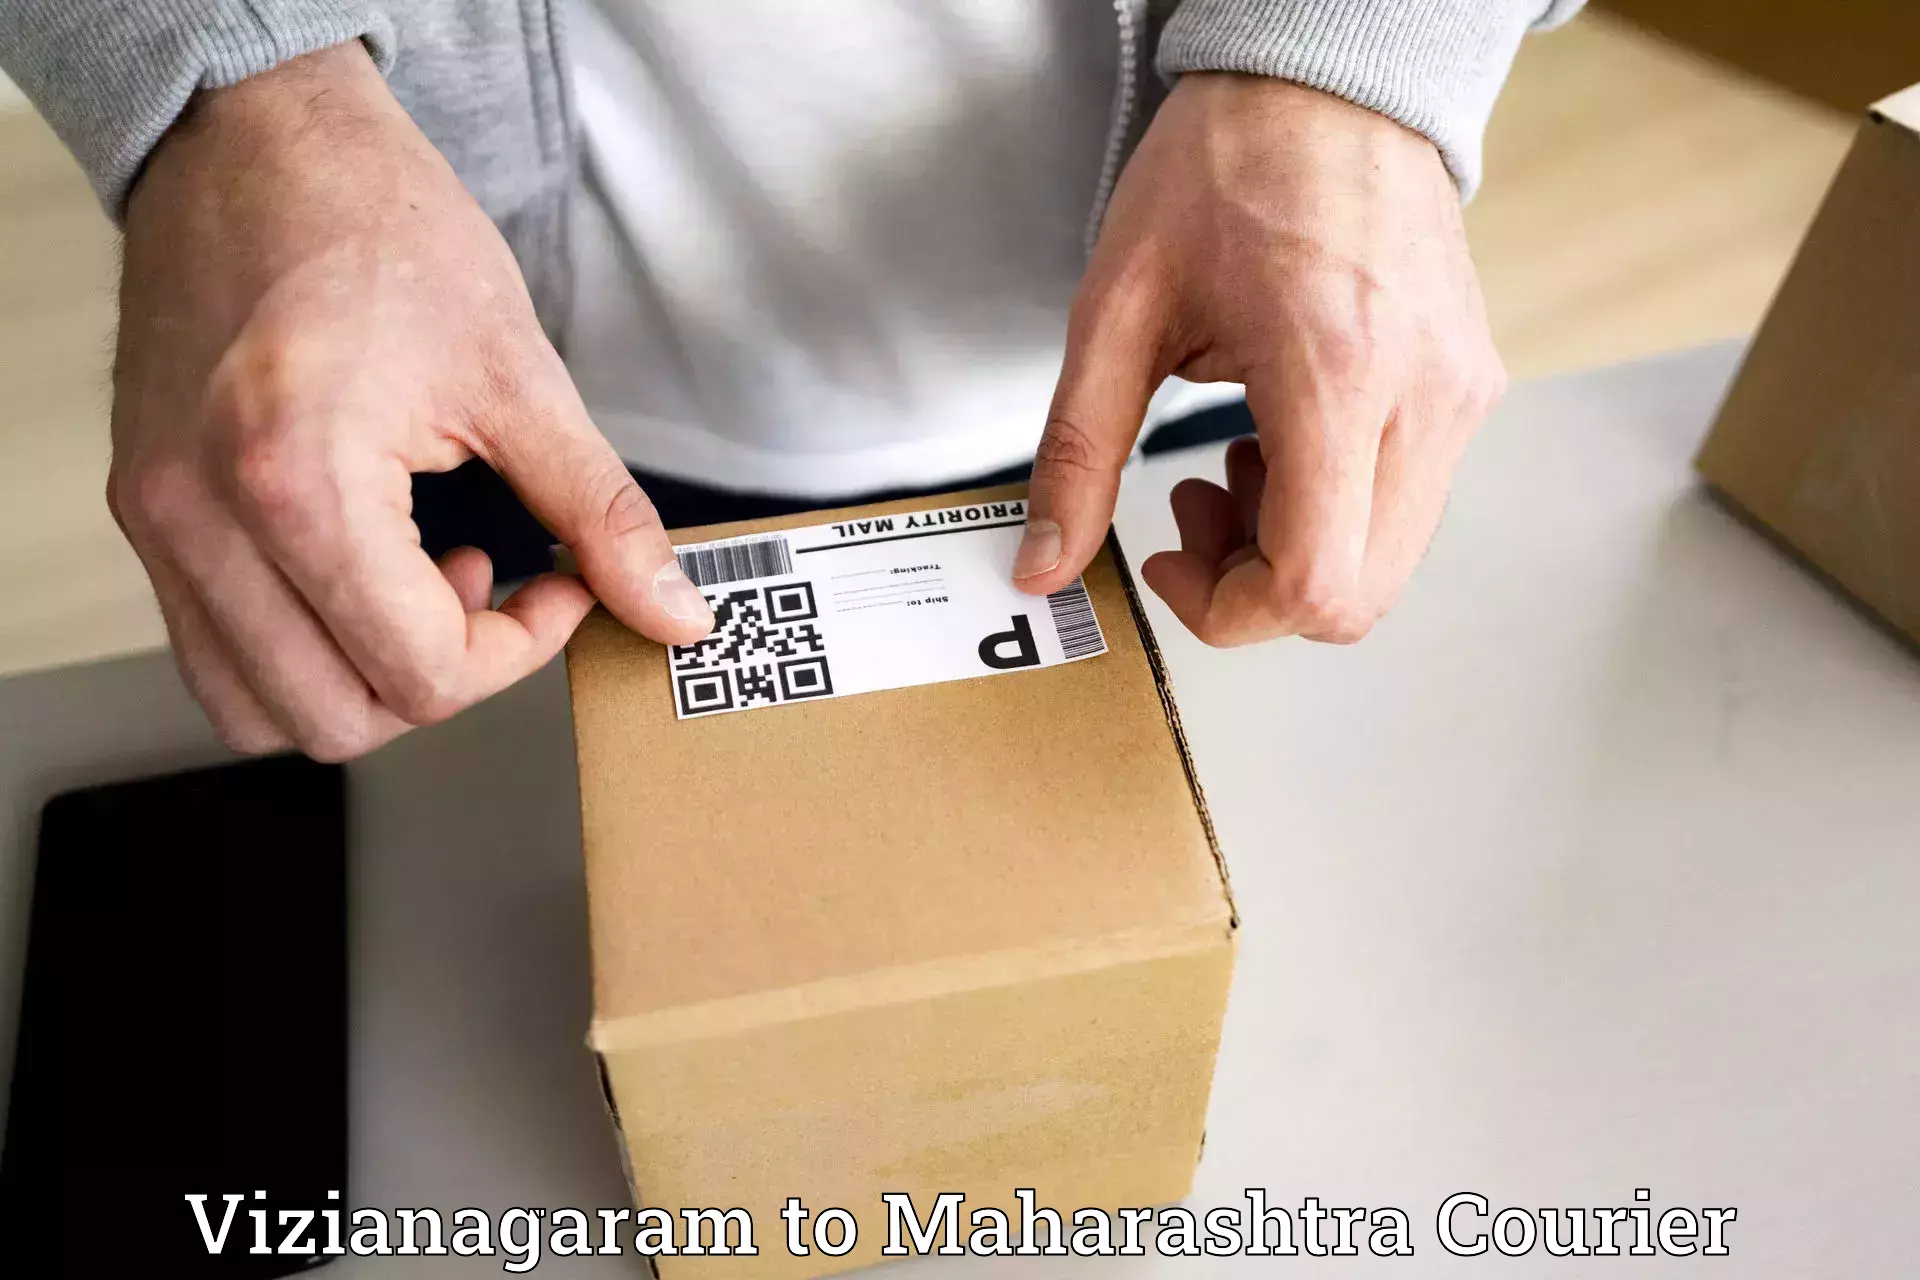 Specialized courier services Vizianagaram to Maharashtra